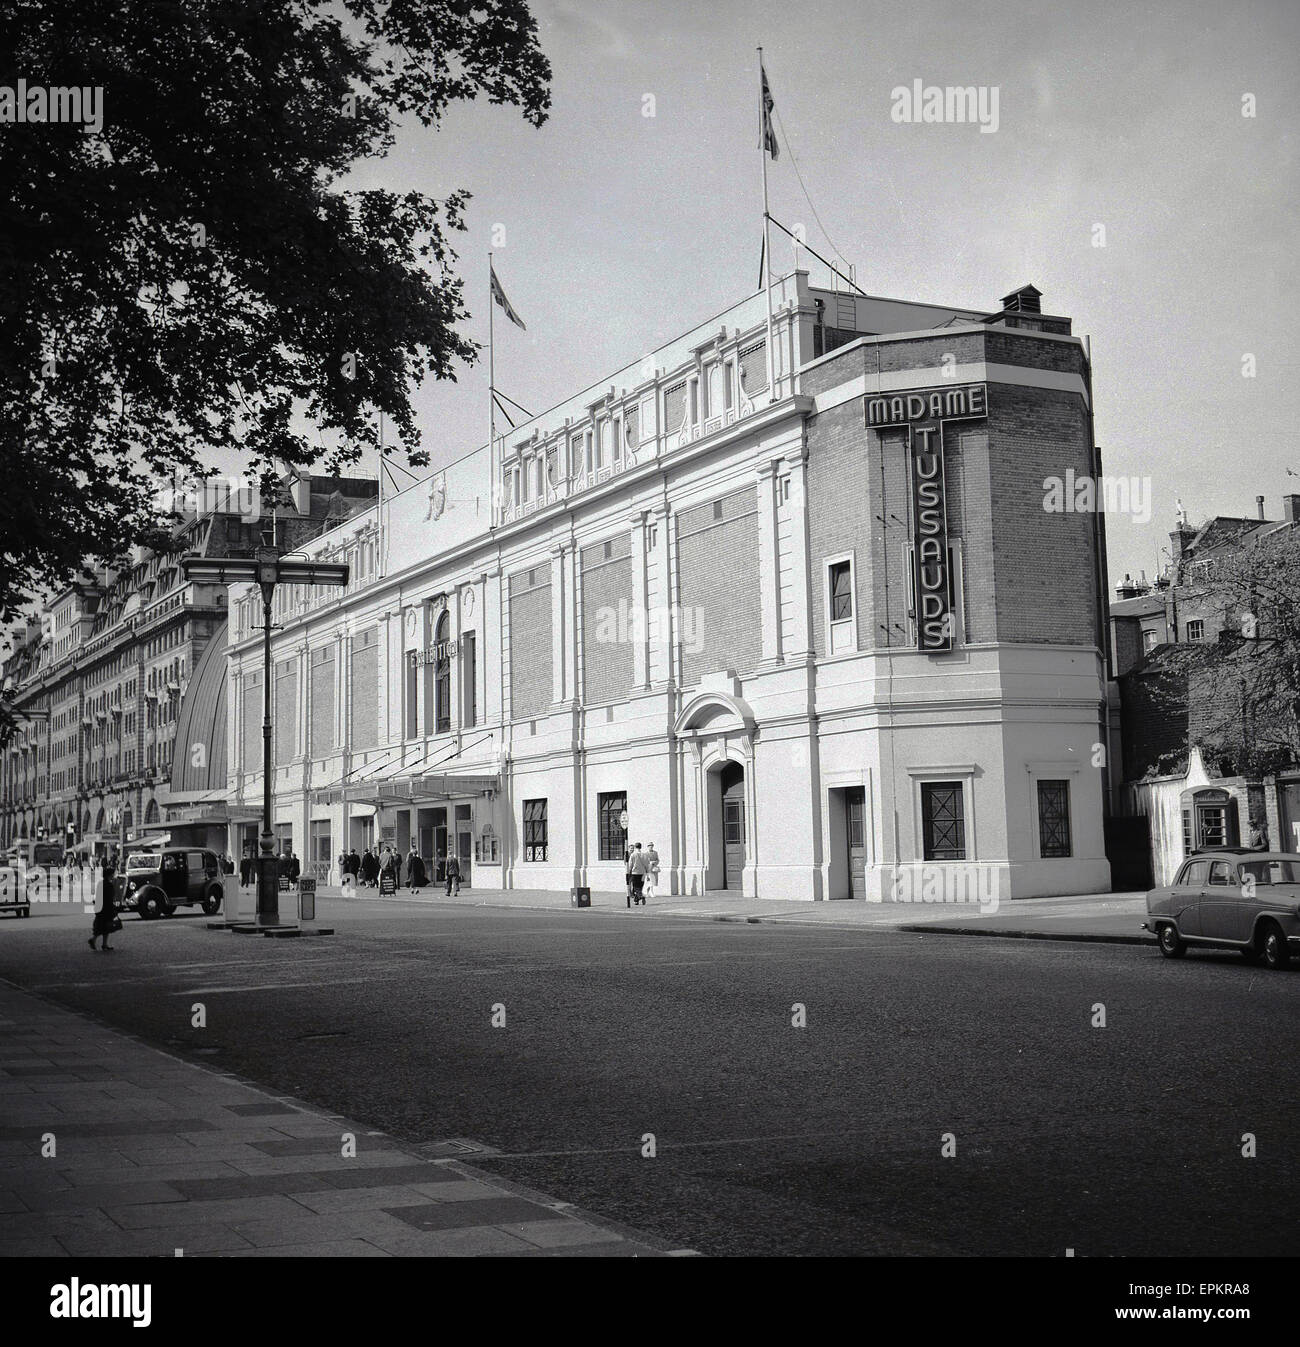 Années 1950, historique, vue extérieure de la fin de l'édifice abritant le célèbre musée de cire, musée de Madame Tussauds, dans une rue paisible de Marylebone Road. Banque D'Images